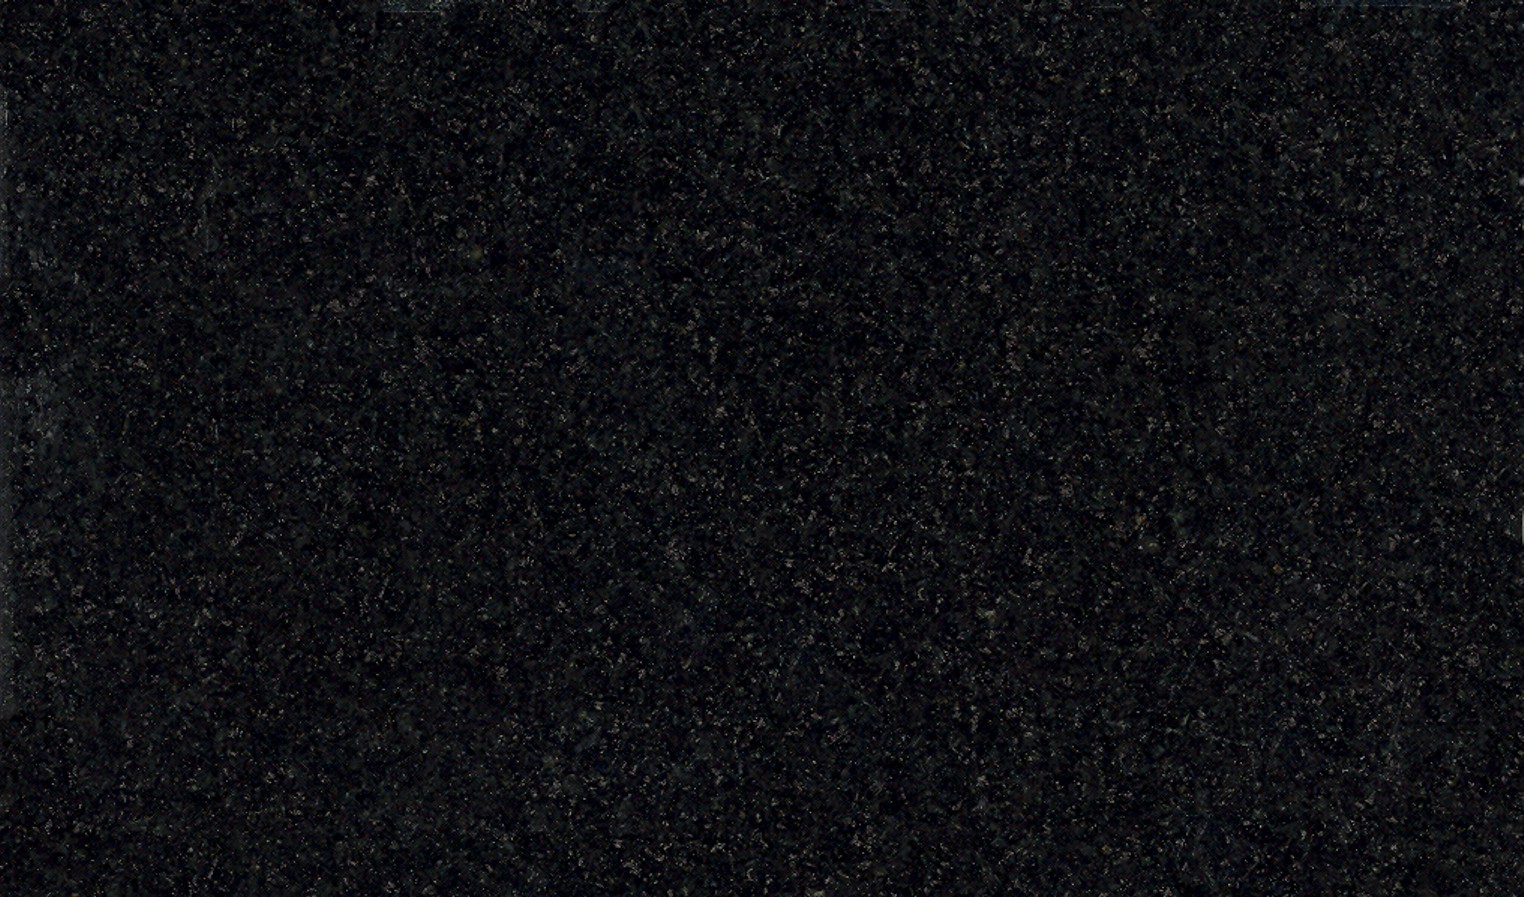 45+] Black Granite Wallpaper on WallpaperSafari